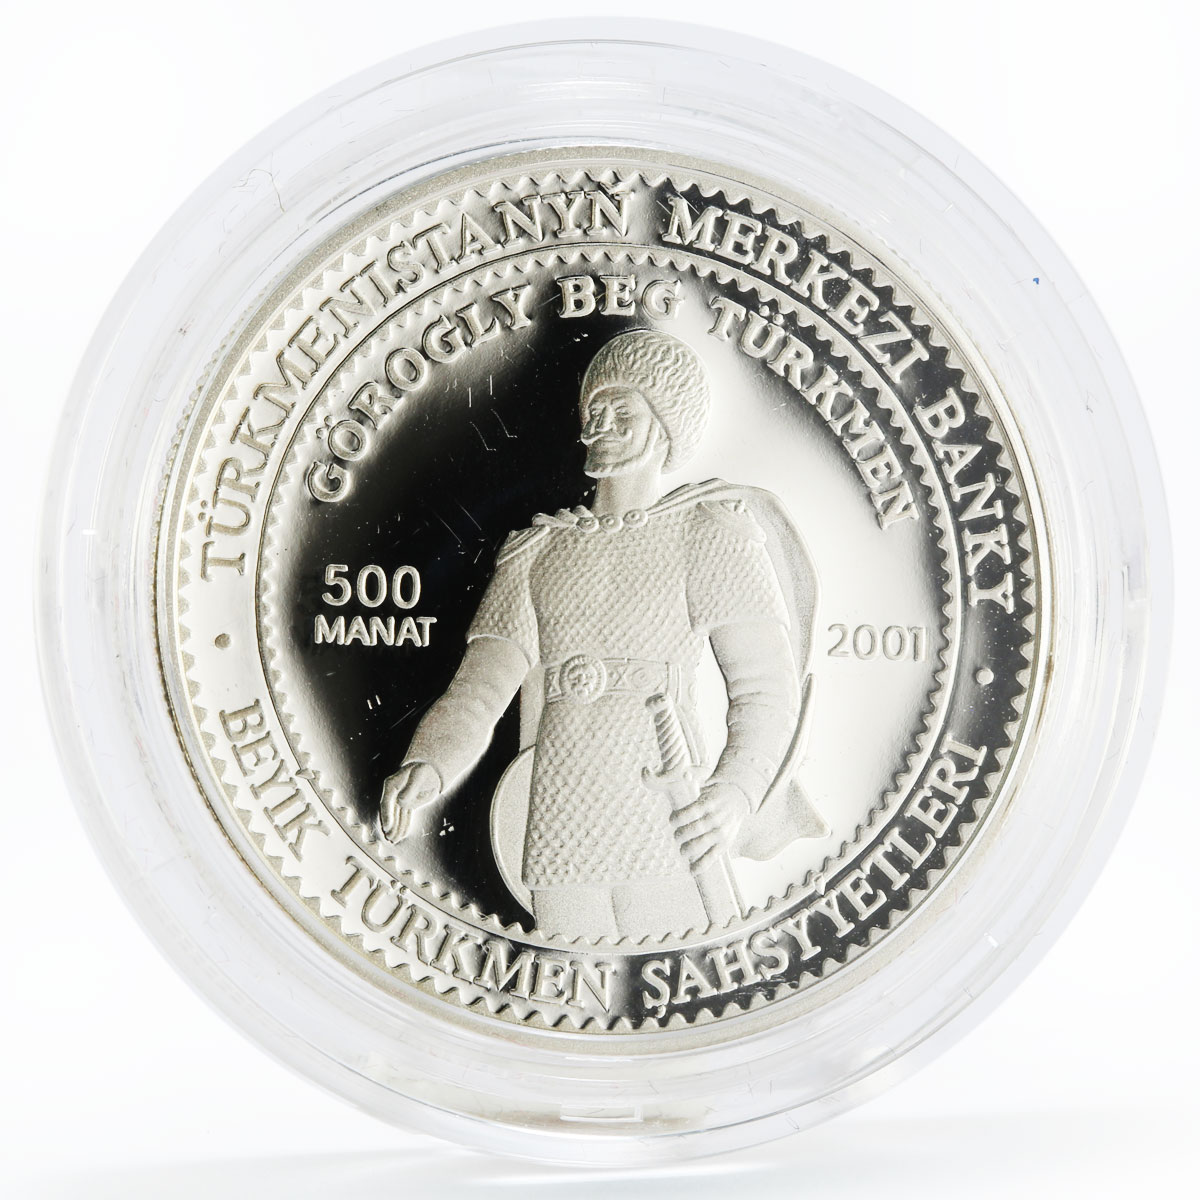 Turkmenistan 500 manat Gorogly Beg Turkmen proof silver coin 2001